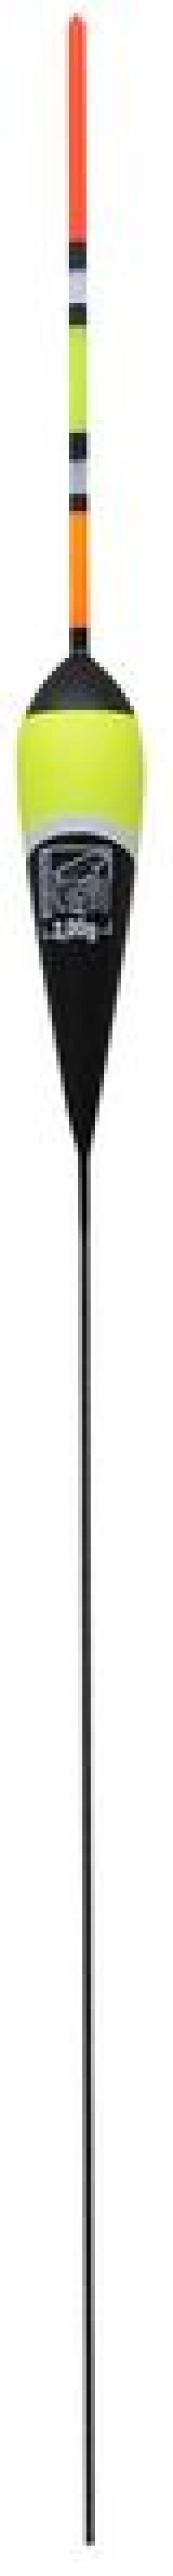 Robinson Spławik multicolor 2.50 g, 1 szt. (4S-M03-025) 1